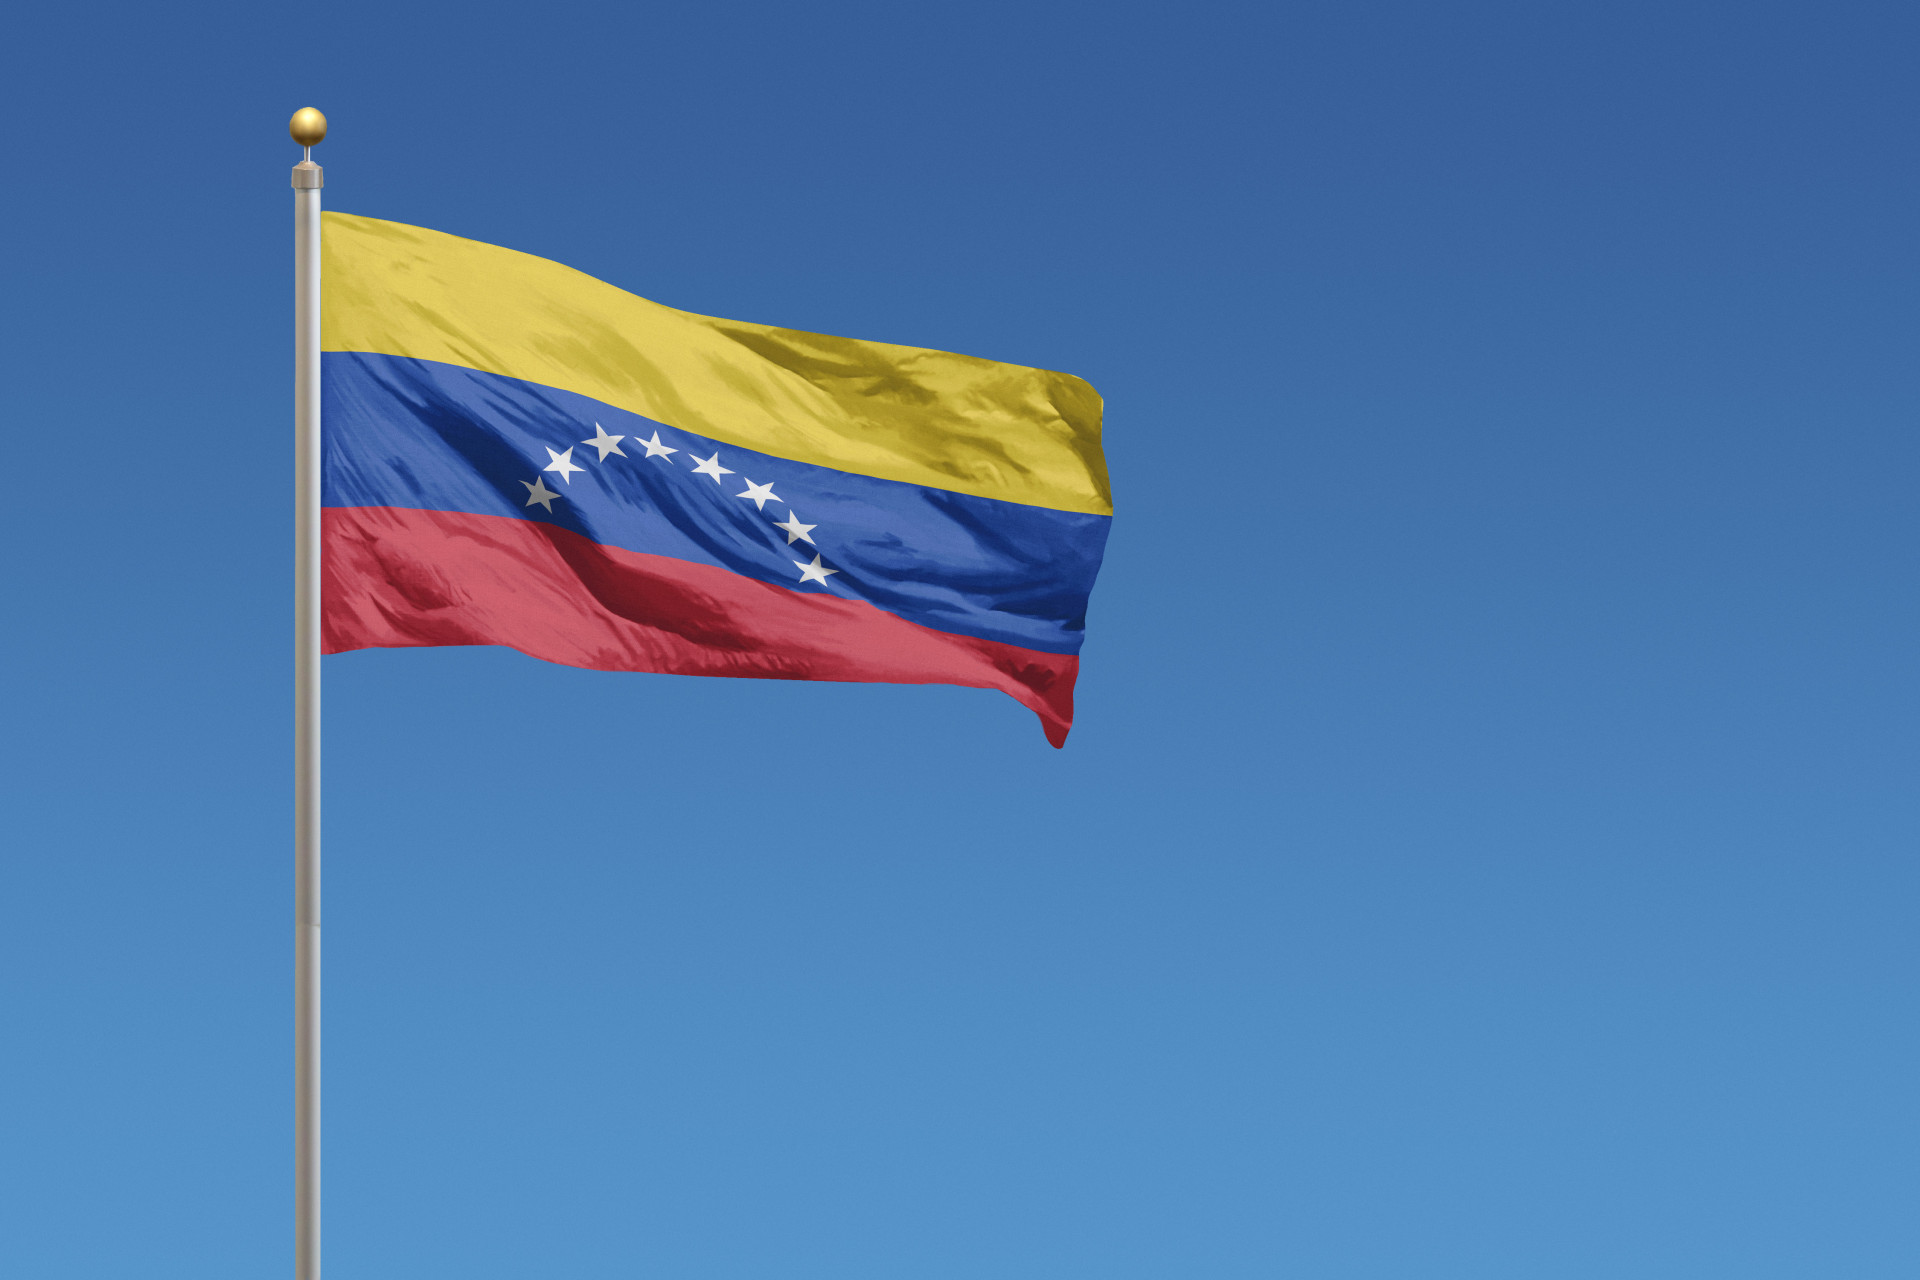 Le Venezuela se place juste avant la Colombie dans ce classement, alors quelles stars sont issues de ce pays?<p>Tu pourrais aussi aimer:<a href="https://www.starsinsider.com/n/447172?utm_source=msn.com&utm_medium=display&utm_campaign=referral_description&utm_content=227400v3"> Les plus grands films de Hugh Grant</a></p>